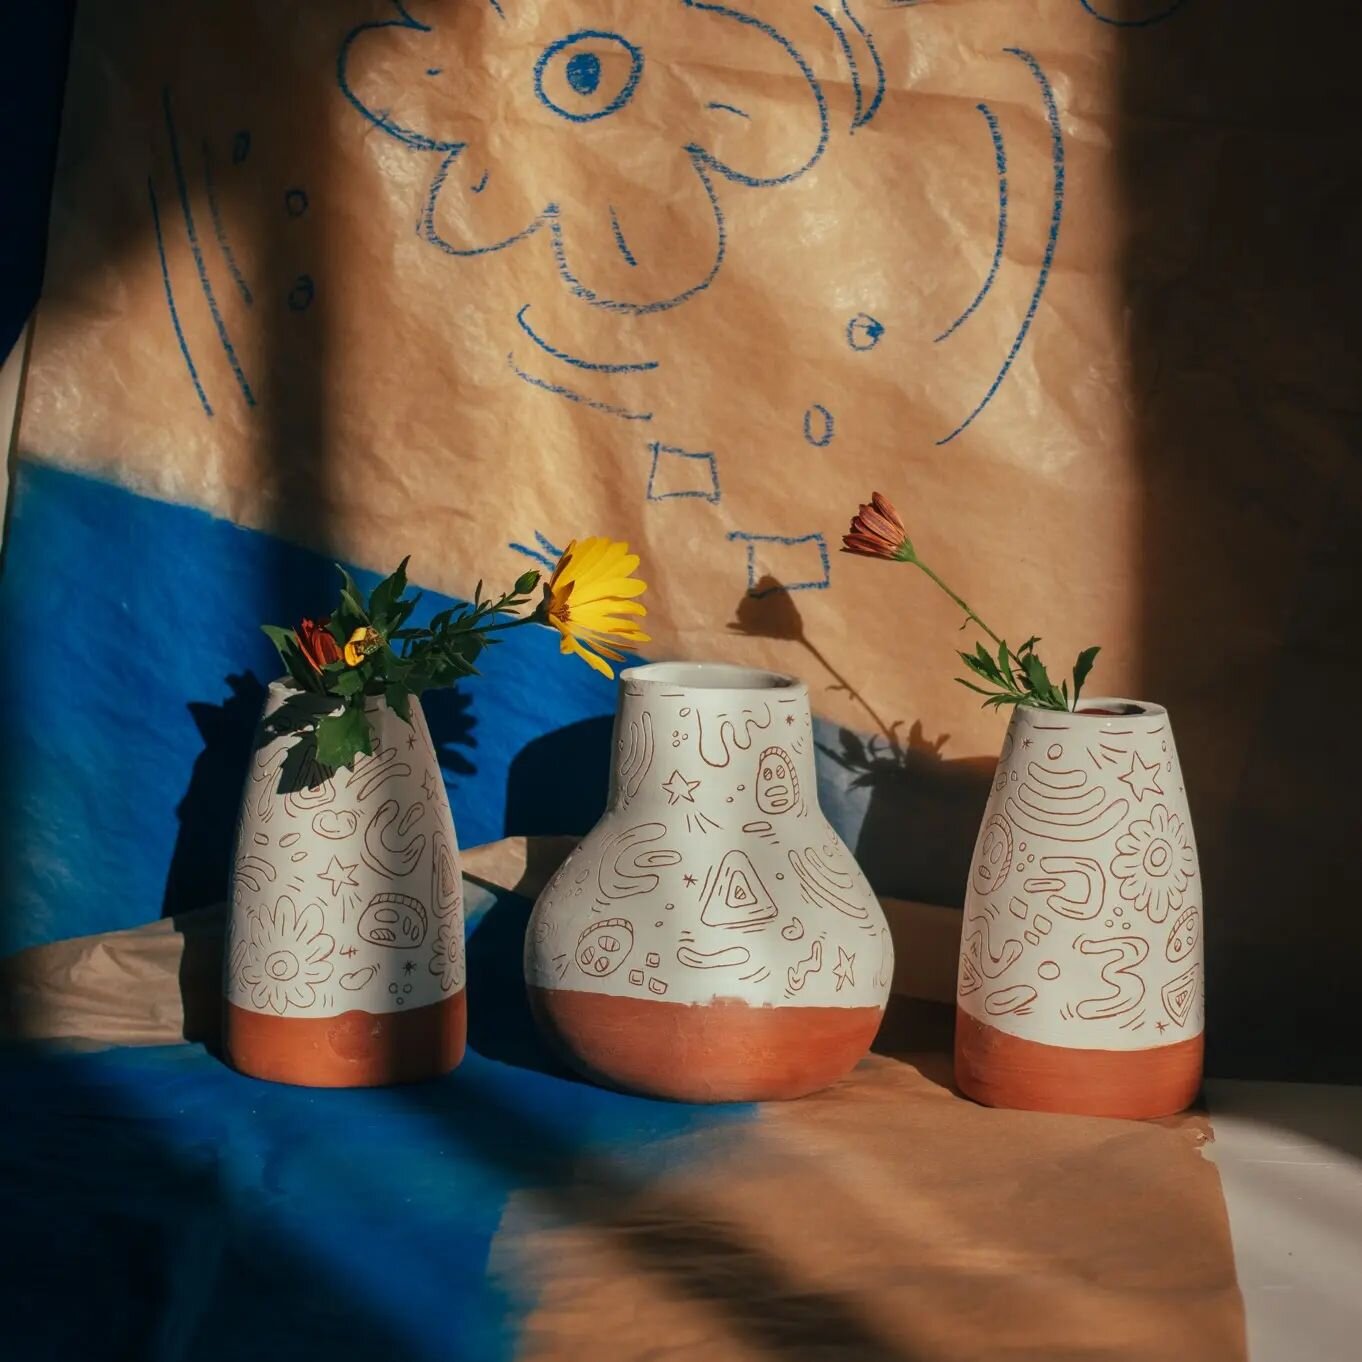 Estos jarrones estaban listos desde inicios de a&ntilde;o, esperando el momento de salir a la luz.

Jarrones en terracota grabados a mano ✍️

#madrigueraworkshop #ceramicsbymadriguera #potterystudio